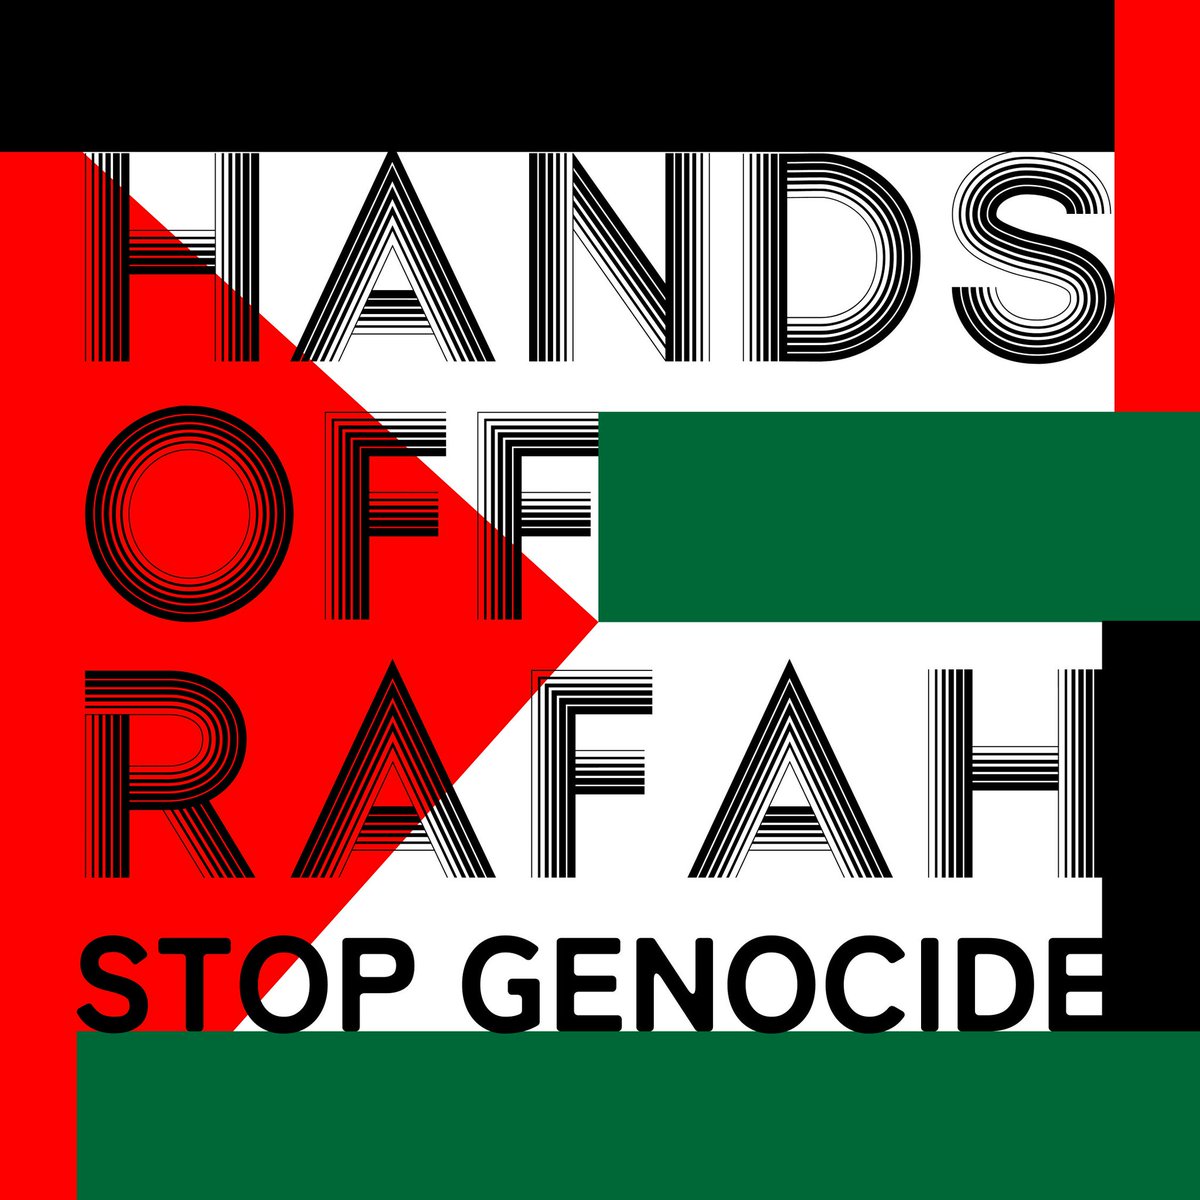 #ラファ侵攻を止めろ
#StopRafahInvasion